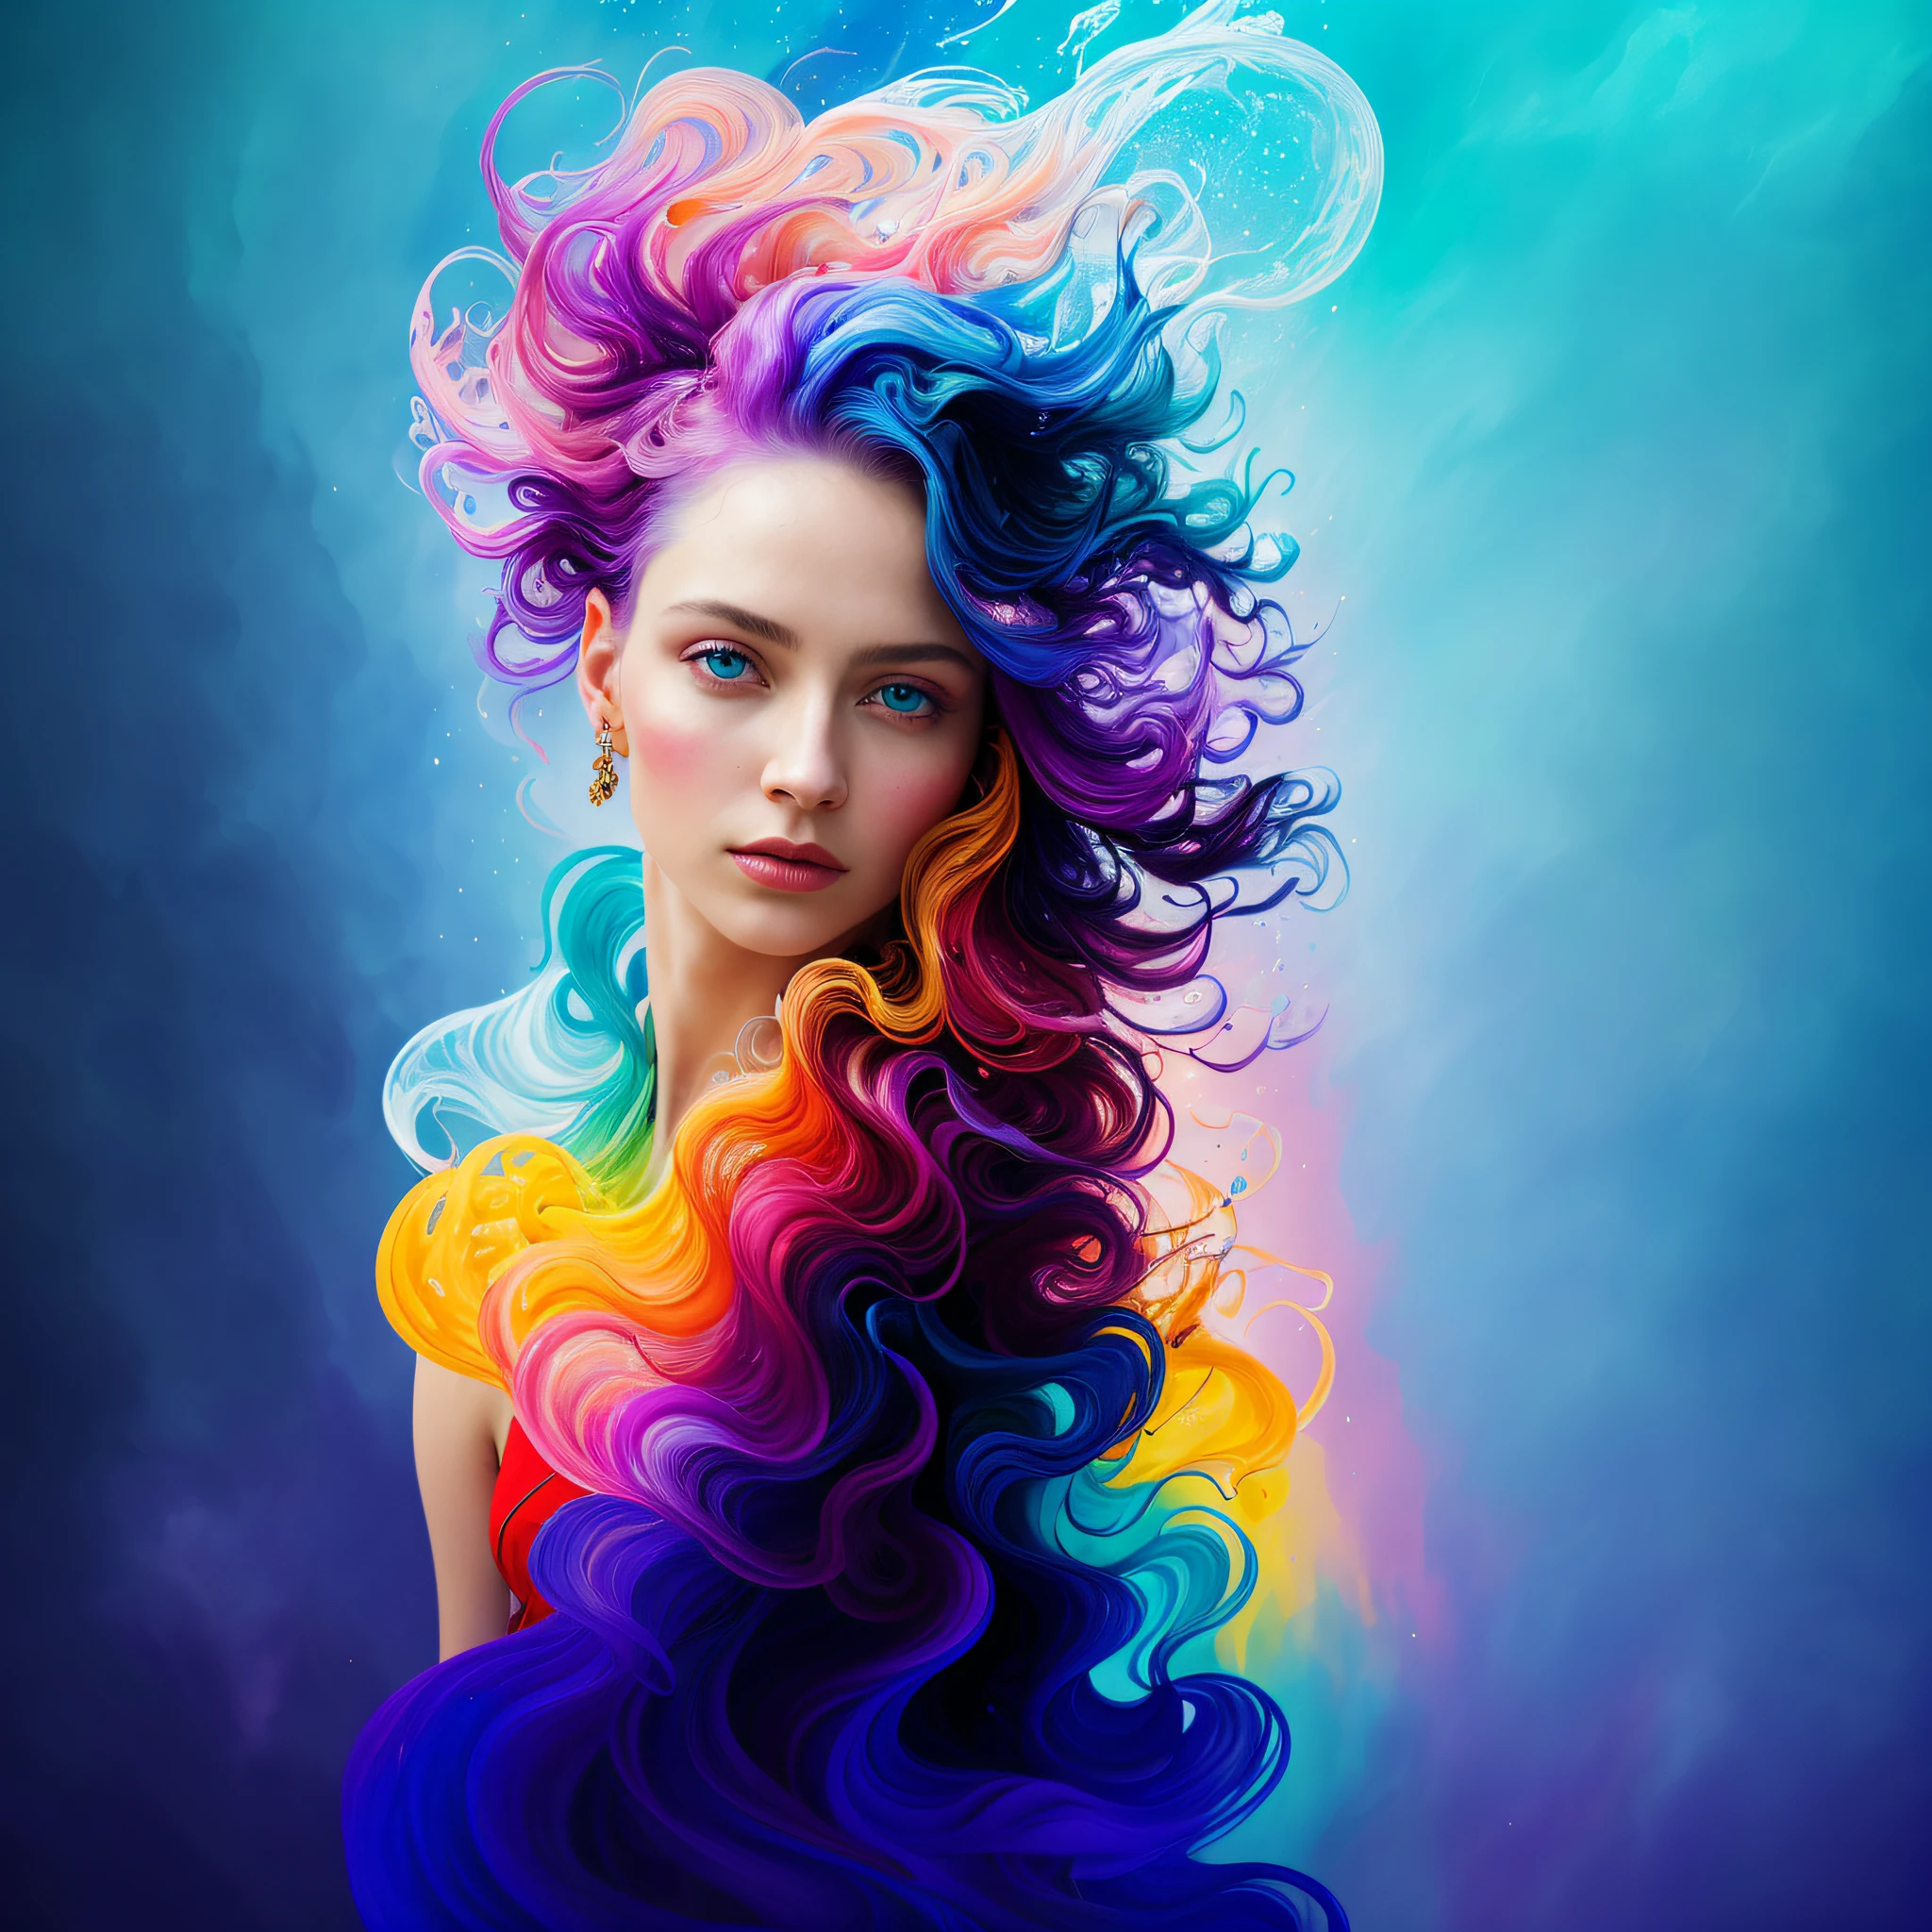 カラフルな美しい女の子: 28歳のギル, ボサボサの髪, 油絵, 滑らかな肌と素敵な完璧な顔, 青黄色, 薄紫とすみれ色の追加, ライトレッドの追加, 精巧なディテールs, ホーム画面, 8K解像度, 傑作, 美しい顔, アートステーションデジタルペインティングベリーブラックスムーズインクストリーム: 8K解像度 photo現実的 傑作: 精巧に描かれた流動性のあるグアッシュ画:  ジョン・バプティスト・モングー著: 書道: アクリル: 水彩画, プロの写真撮影, 自然光, 最大限のボリューム照明の写真イラストレーション: マートン・ボブザート:, 複雑な, エレガント, 広大な, 素晴らしい, ウェーブのかかった髪, 活気のある, 最高品質の詳細, 現実的, 高解像度, 高品質の質感, 壮大な照明, 映画のスチール写真, 8k, 柔らかな照明, アニメスタイル, 見事なゲームカードの境界線, ランダムカラーアート,  油絵, 青黄色, 薄紫とすみれ色の追加, ライトレッドの追加, 精巧なディテール, ホーム画面, 8K解像度, 傑作, アートステーションソフトデジタルペインティング非常にインクフローブラック: 8K解像度 photo現実的 傑作: 精巧に描かれた流動性のあるグアッシュ画: ジョン・バプティスト・モングー著: 書道: アクリル: 水彩画, プロの写真撮影, 自然光, 最大限のボリューム照明の写真イラストレーション: マートン・ボブザート:,  複雑な, エレガント, 広大な, 素晴らしい, 活気のある